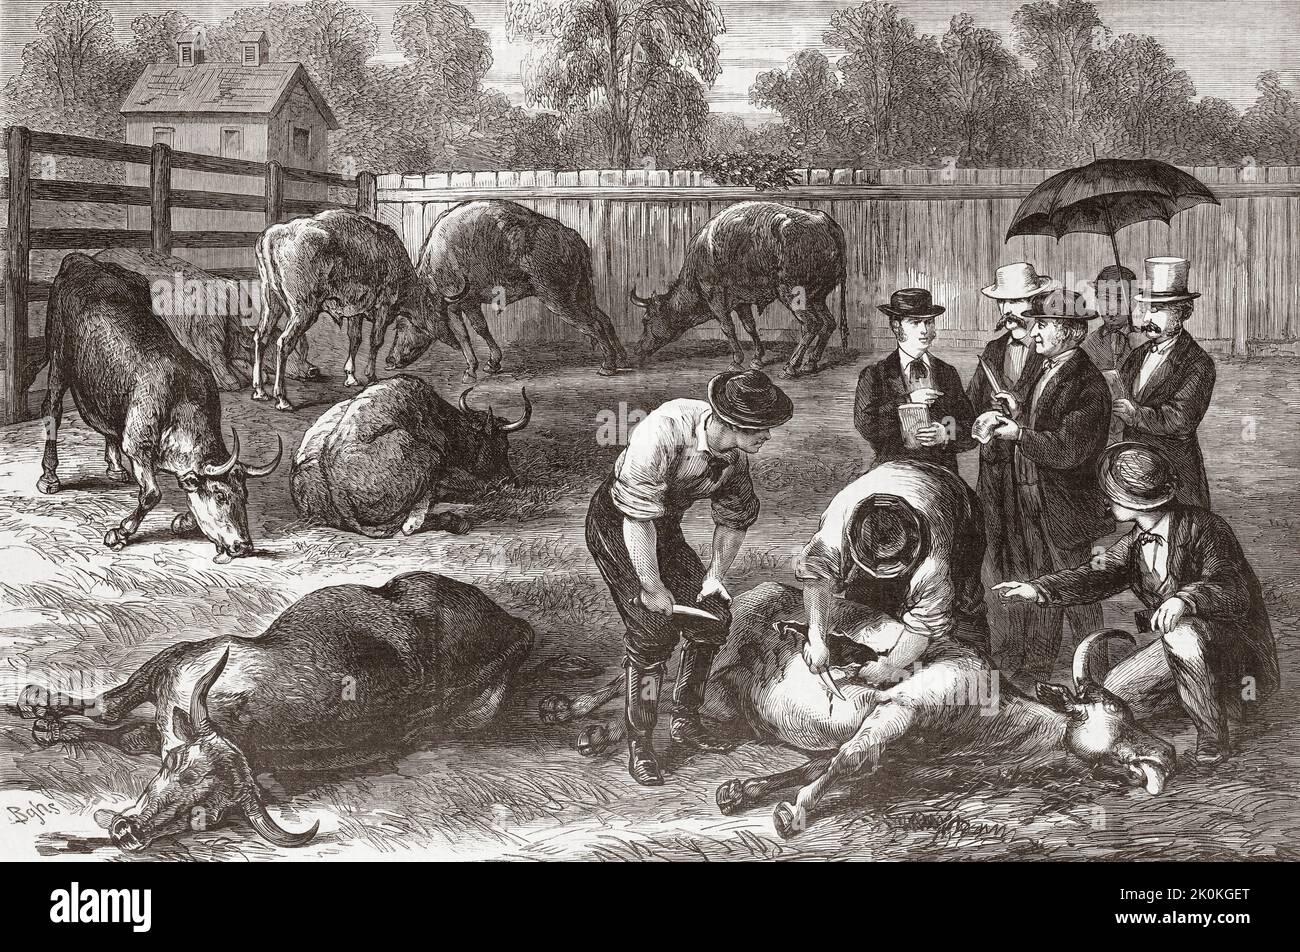 Les membres du Conseil de santé de New York examinent les animaux frappés par la peste bovine (également connue sous le nom de murain Steppe ou peste bovine) en 1868. Après une illustration dans le journal illustré de Frank Leslie. Banque D'Images